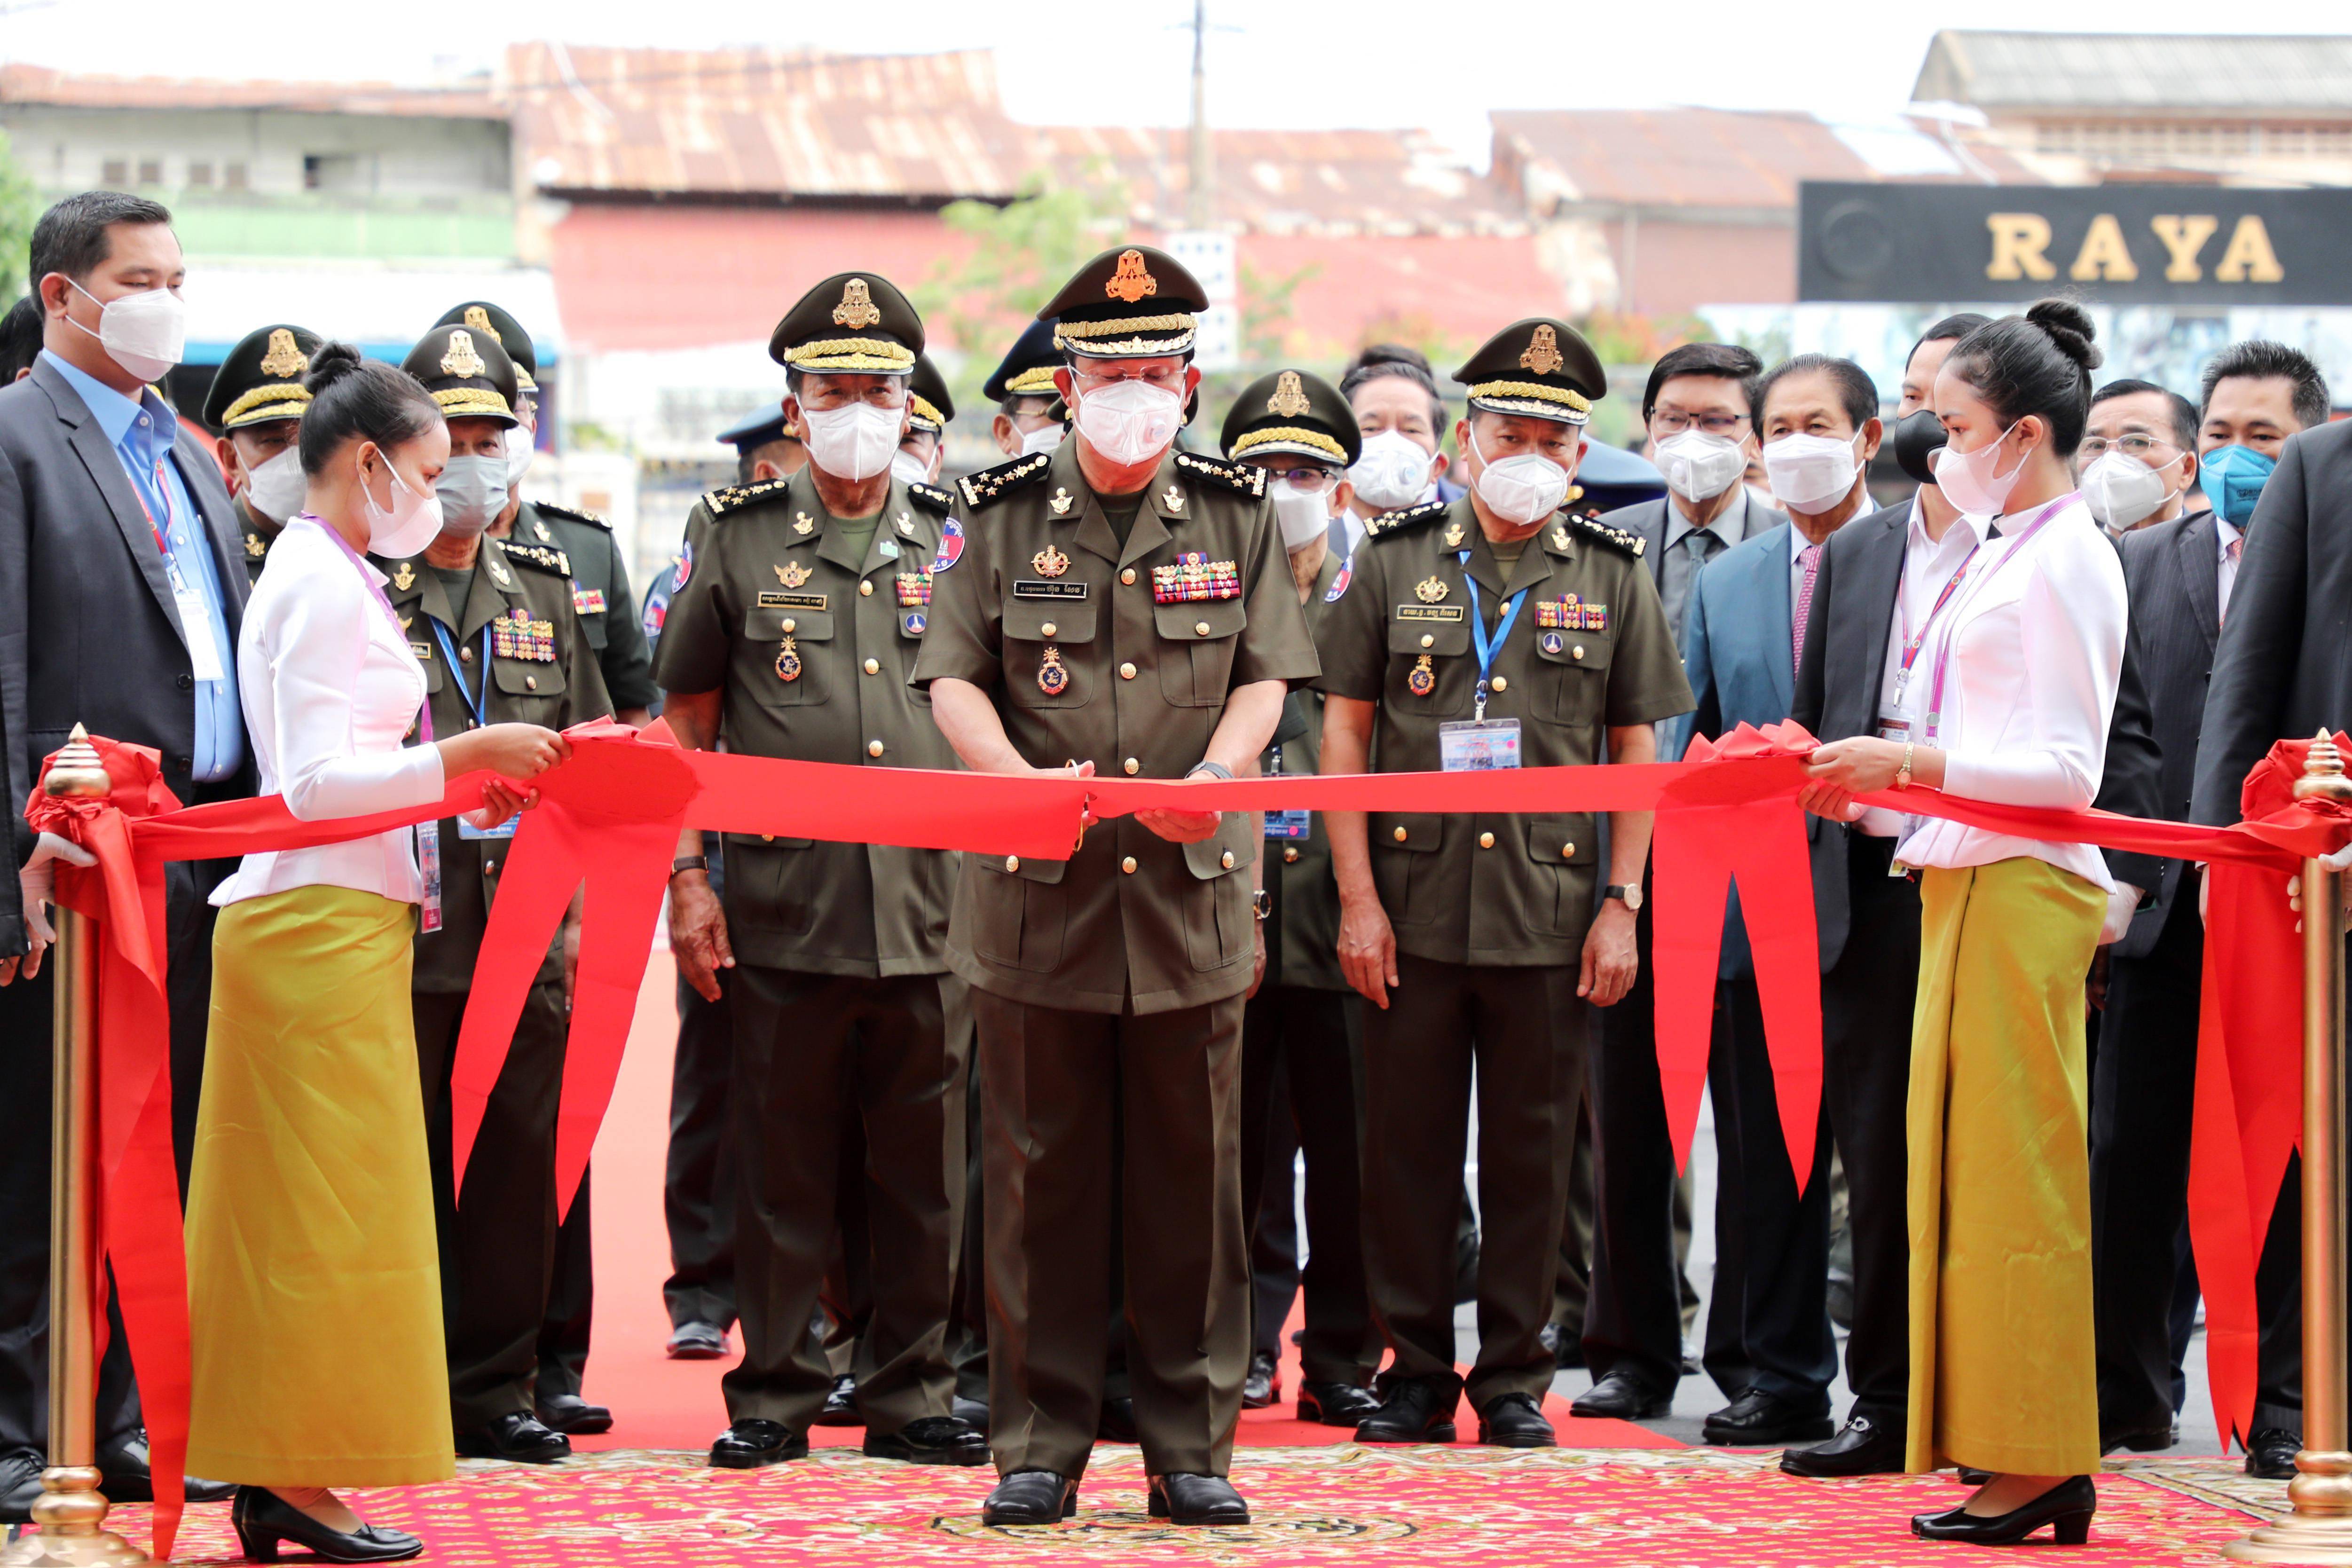 12月29日,在柬埔寨首都金边,柬埔寨首相洪森在柬埔寨国防部办公楼项目